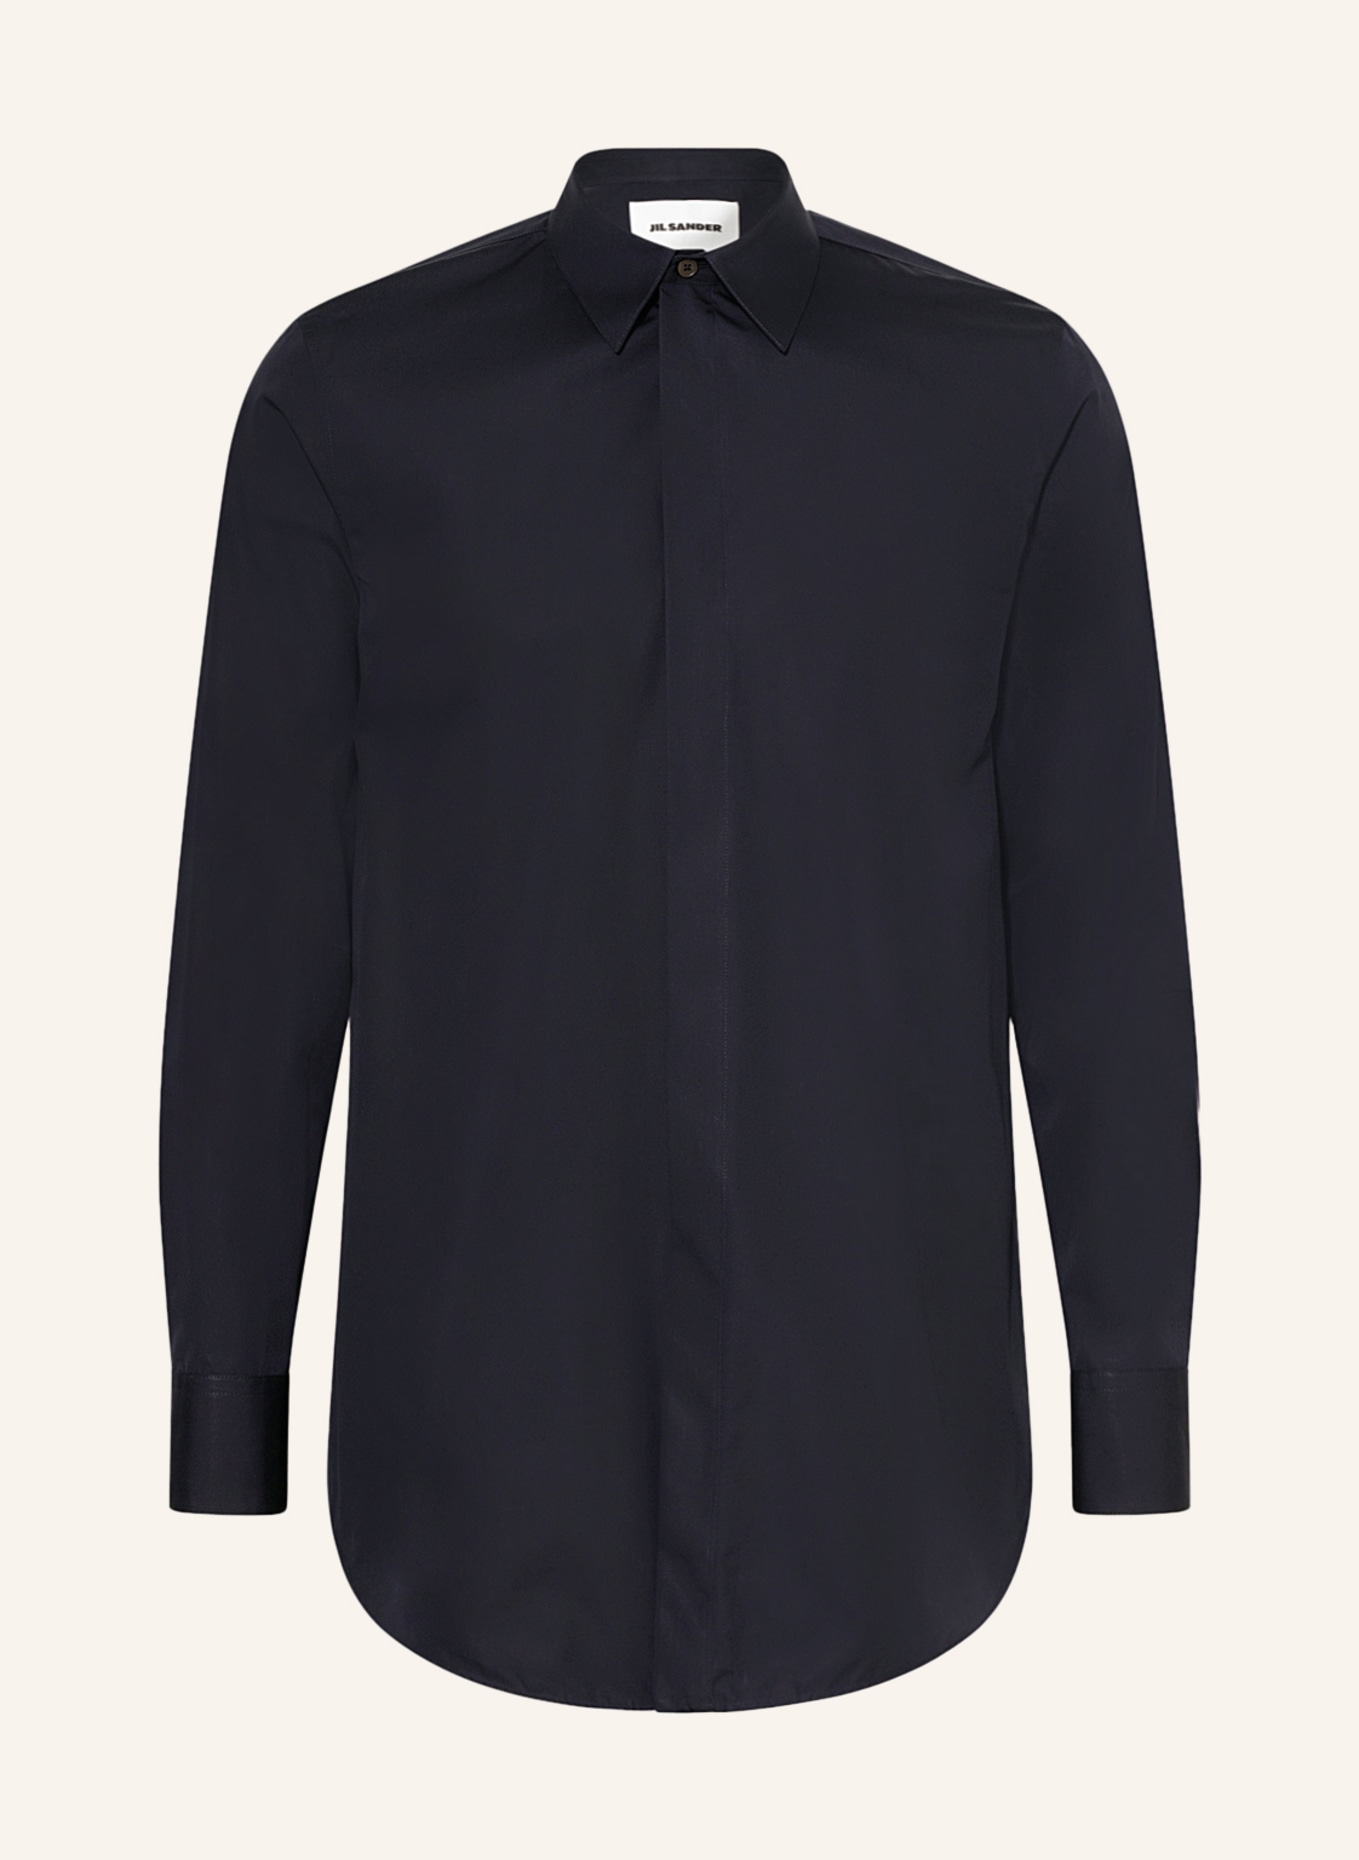 JIL SANDER Shirt regular fit, Color: DARK BLUE (Image 1)